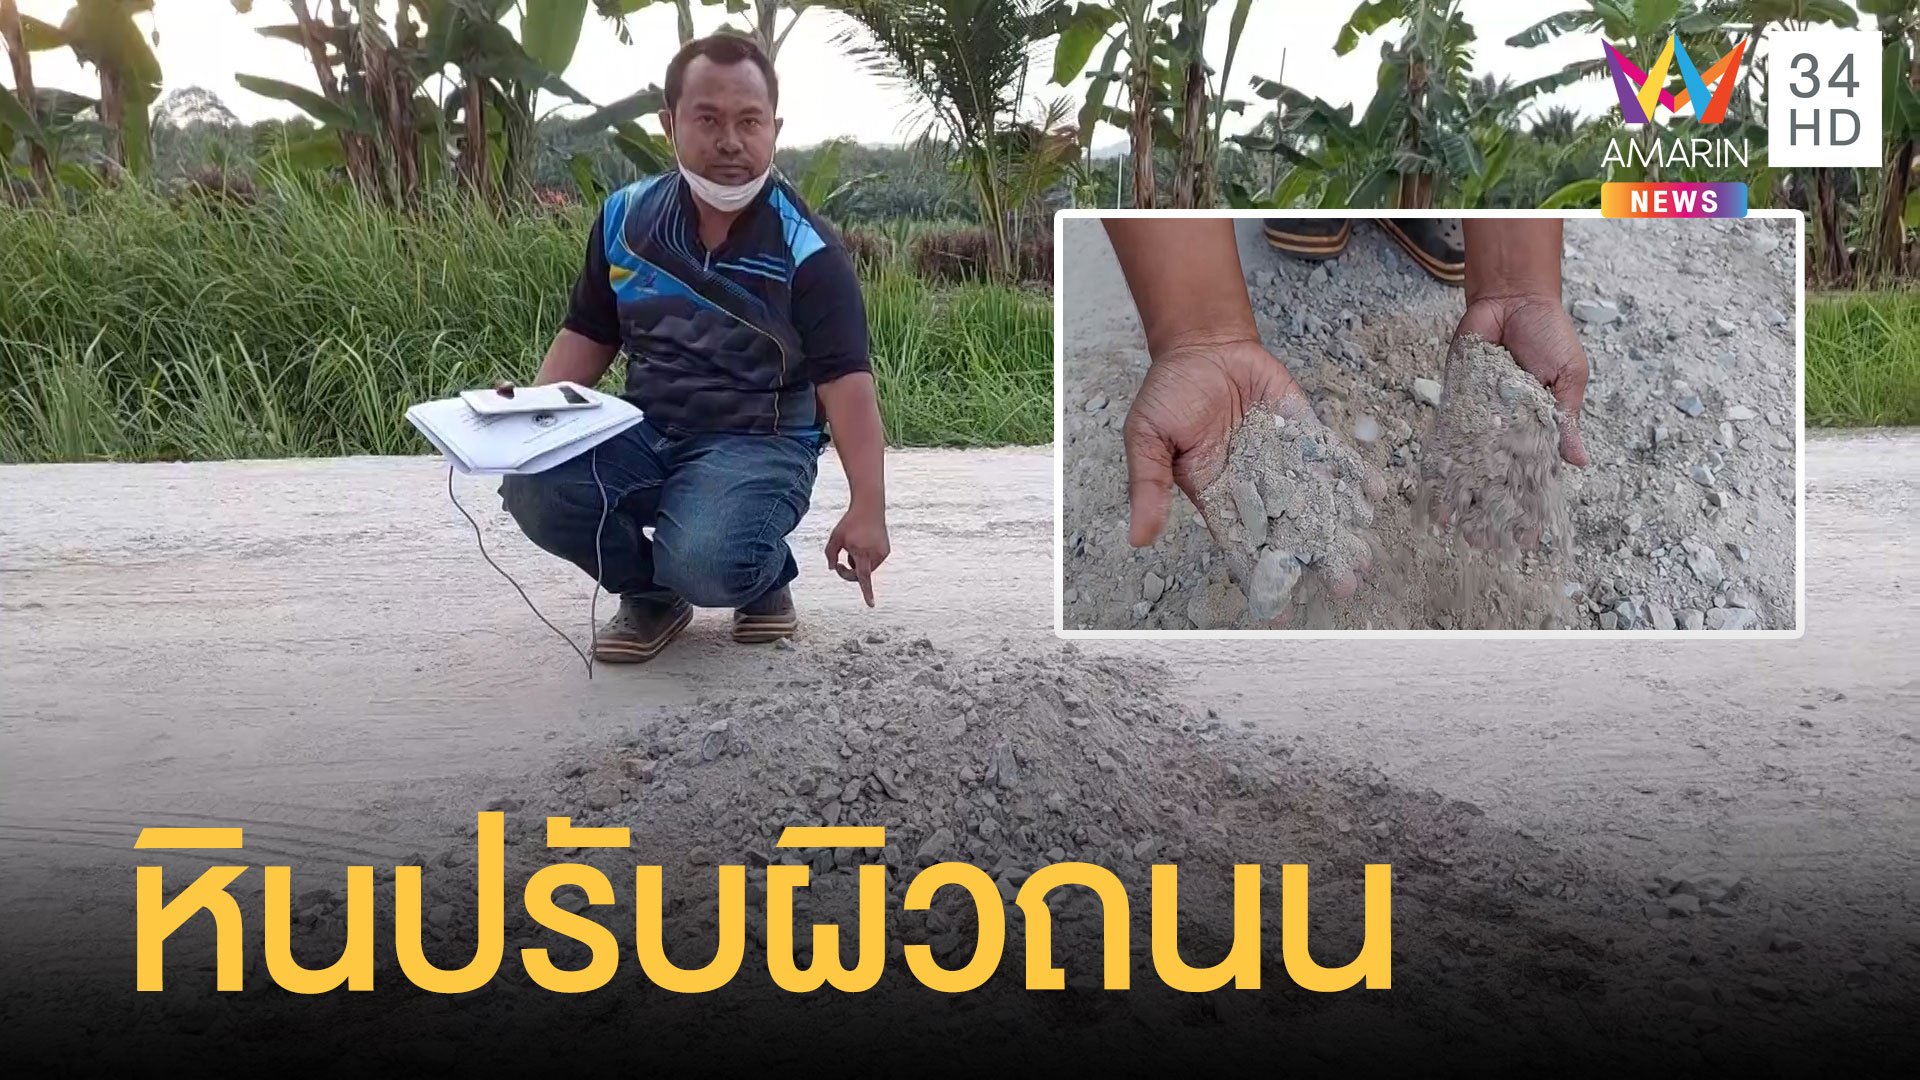 ชาวบ้านแฉซ่อมถนนด้วยหินผุแทนหินคลุก อบต.แจงแค่ปรับผิวถนน | ข่าวอรุณอมรินทร์ | 6 ม.ค. 65 | AMARIN TVHD34